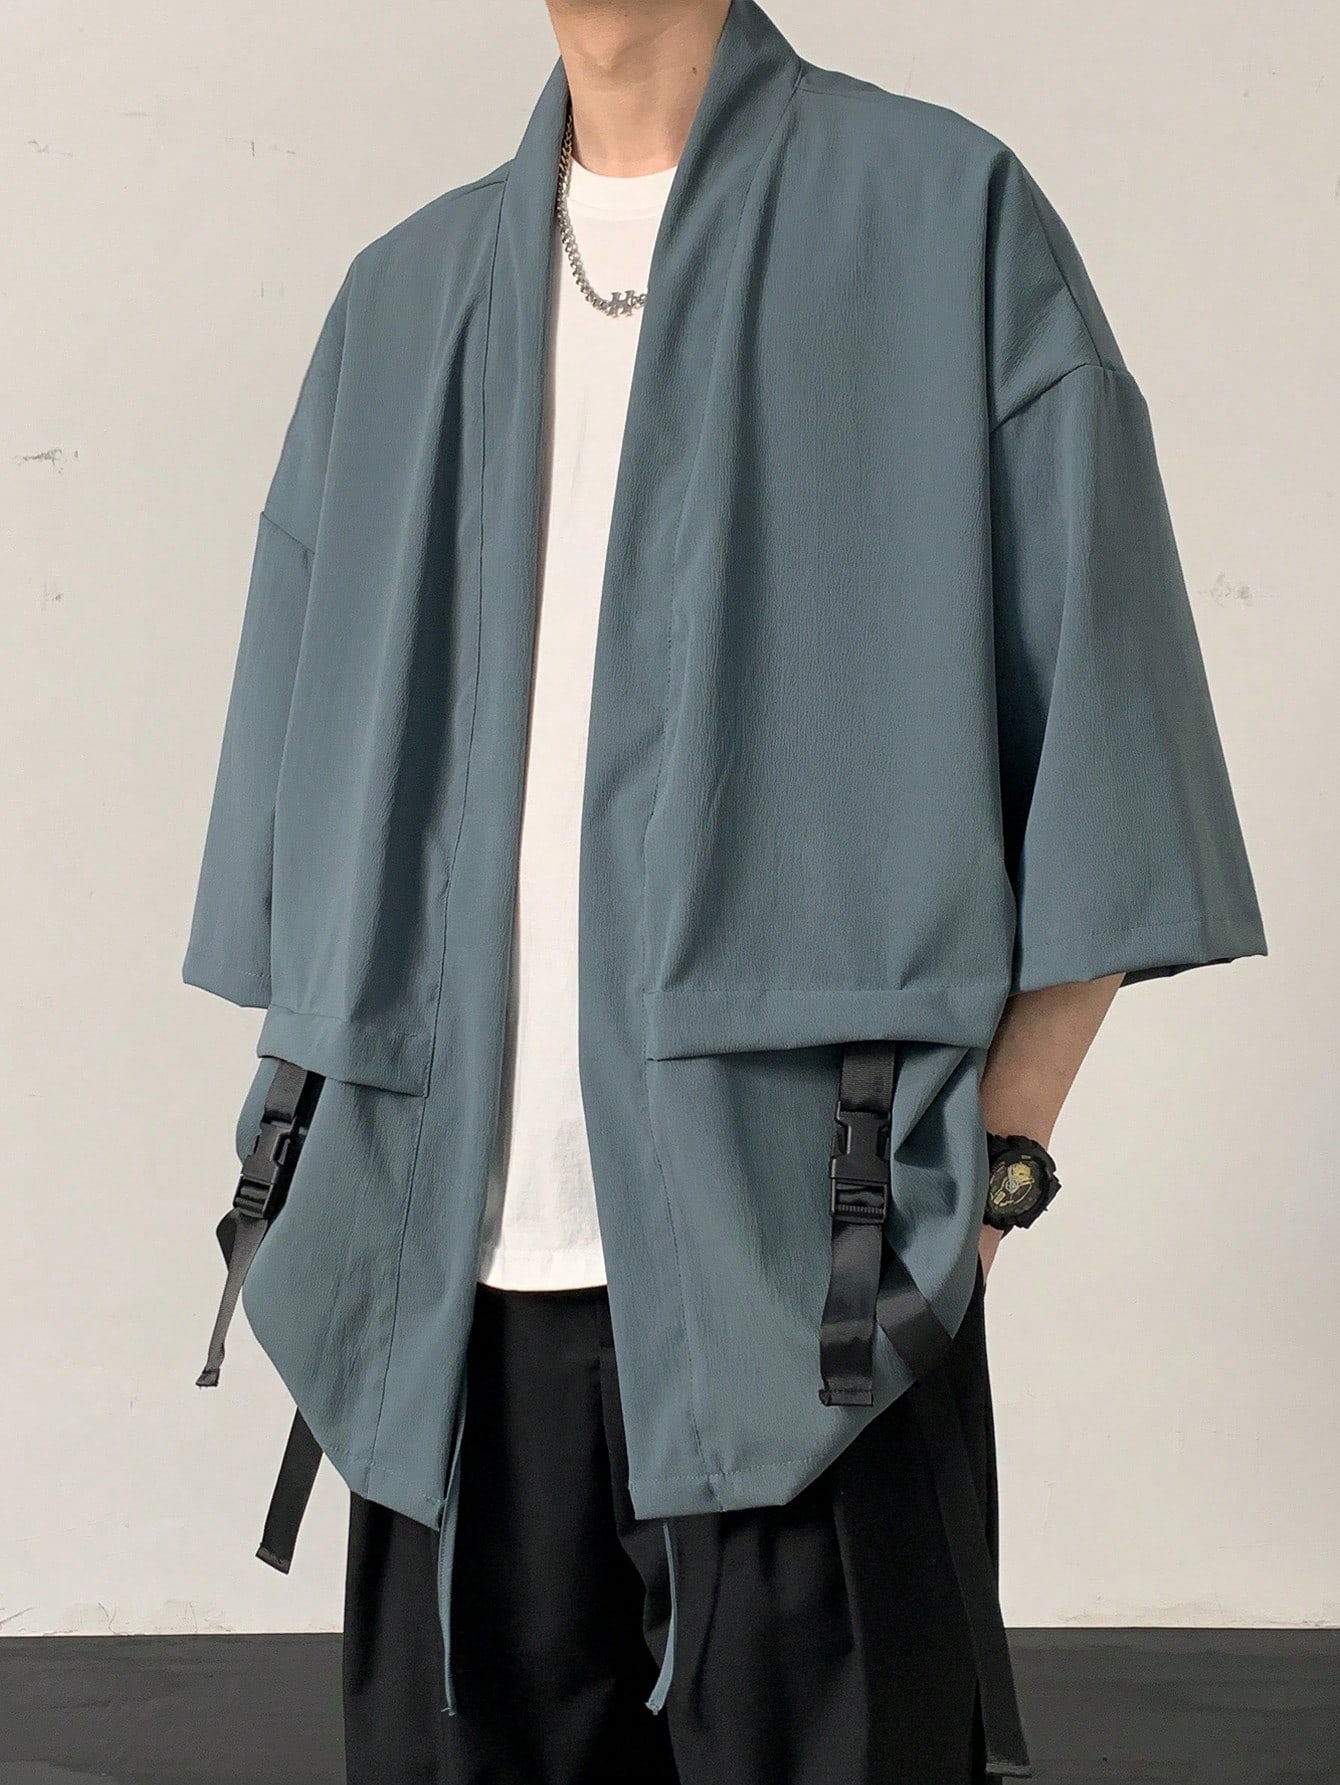 Мужское кимоно в японском стиле Manfinity EMRG с поясом-оби, пыльный синий